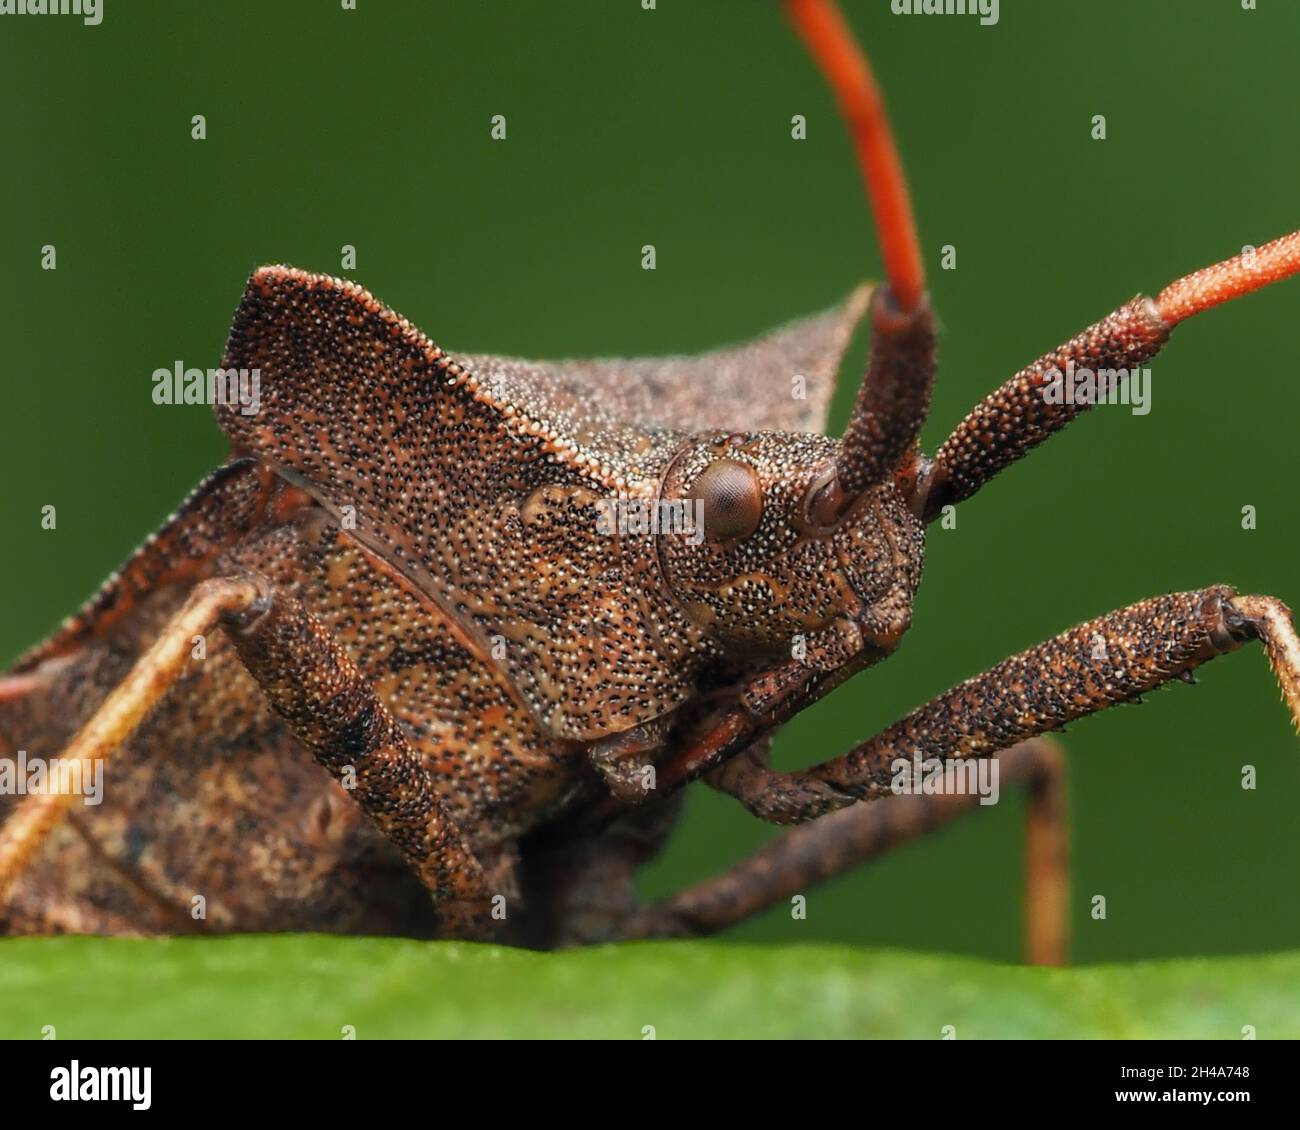 Nahaufnahme eines Hafenbugs (Coreus marginatus), der auf einem Blatt ruht. Tipperary, Irland Stockfoto